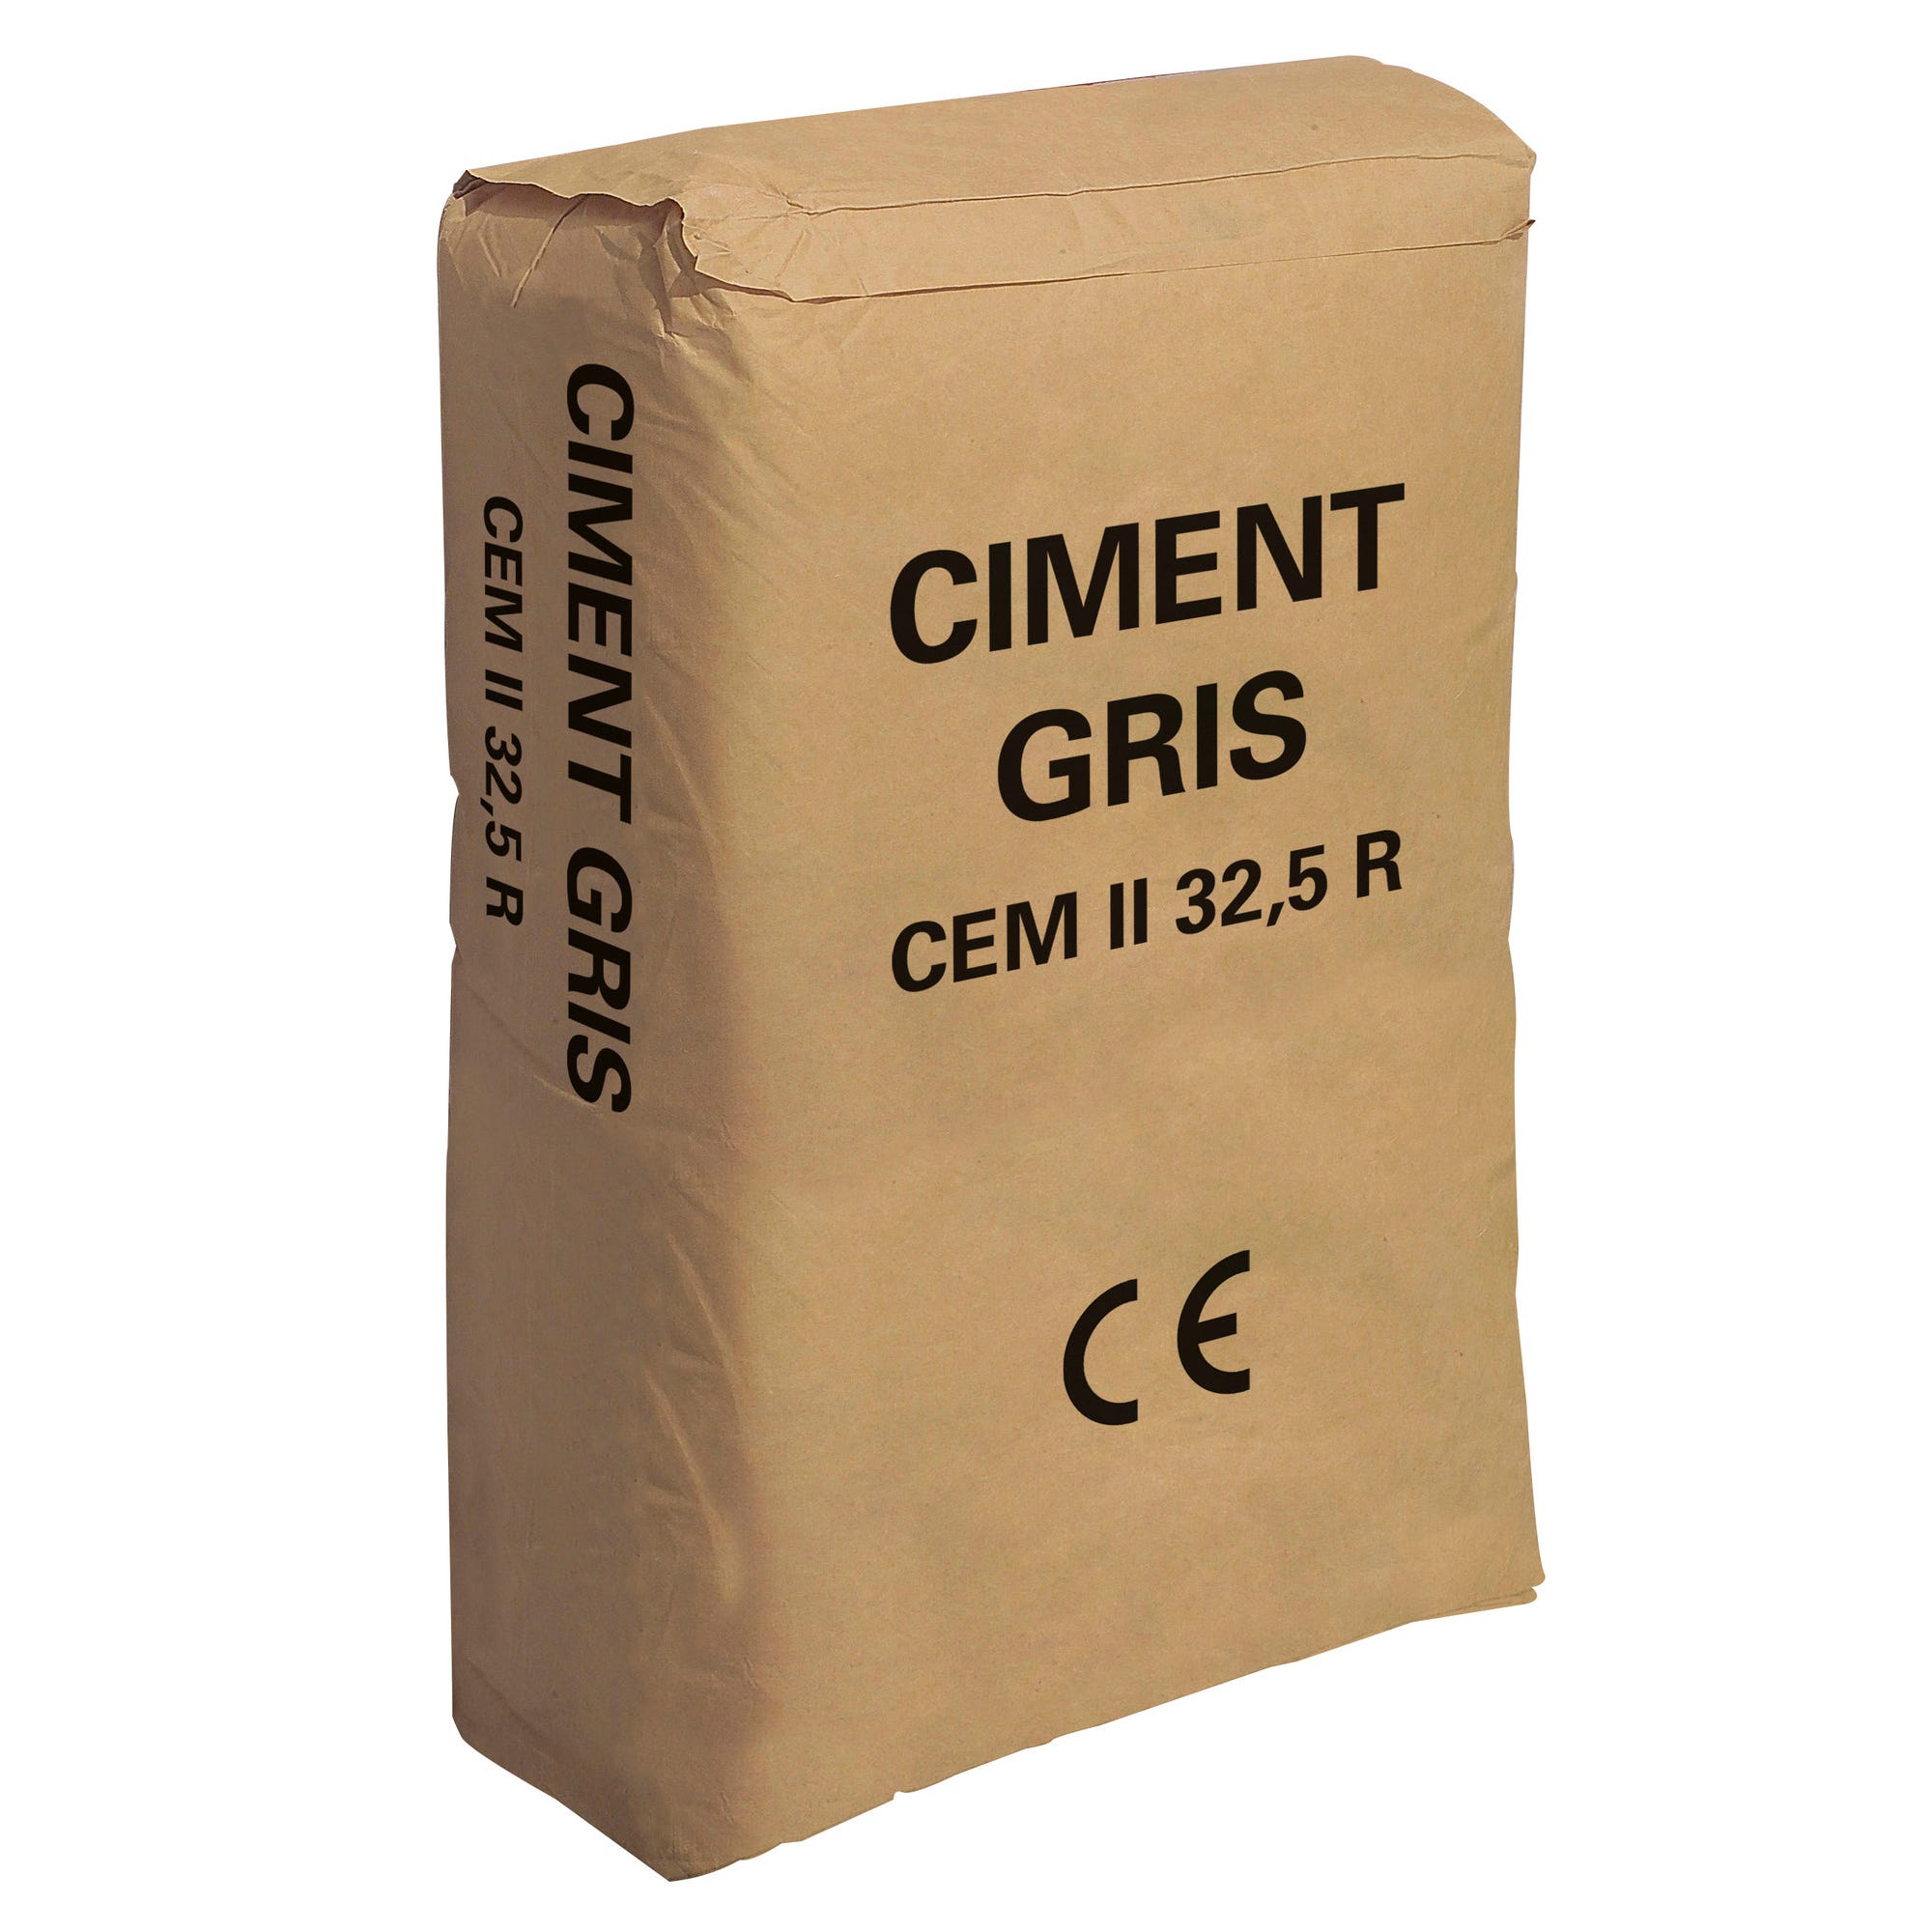 Ciment gris CE, 25 kg Vrac du nord 1